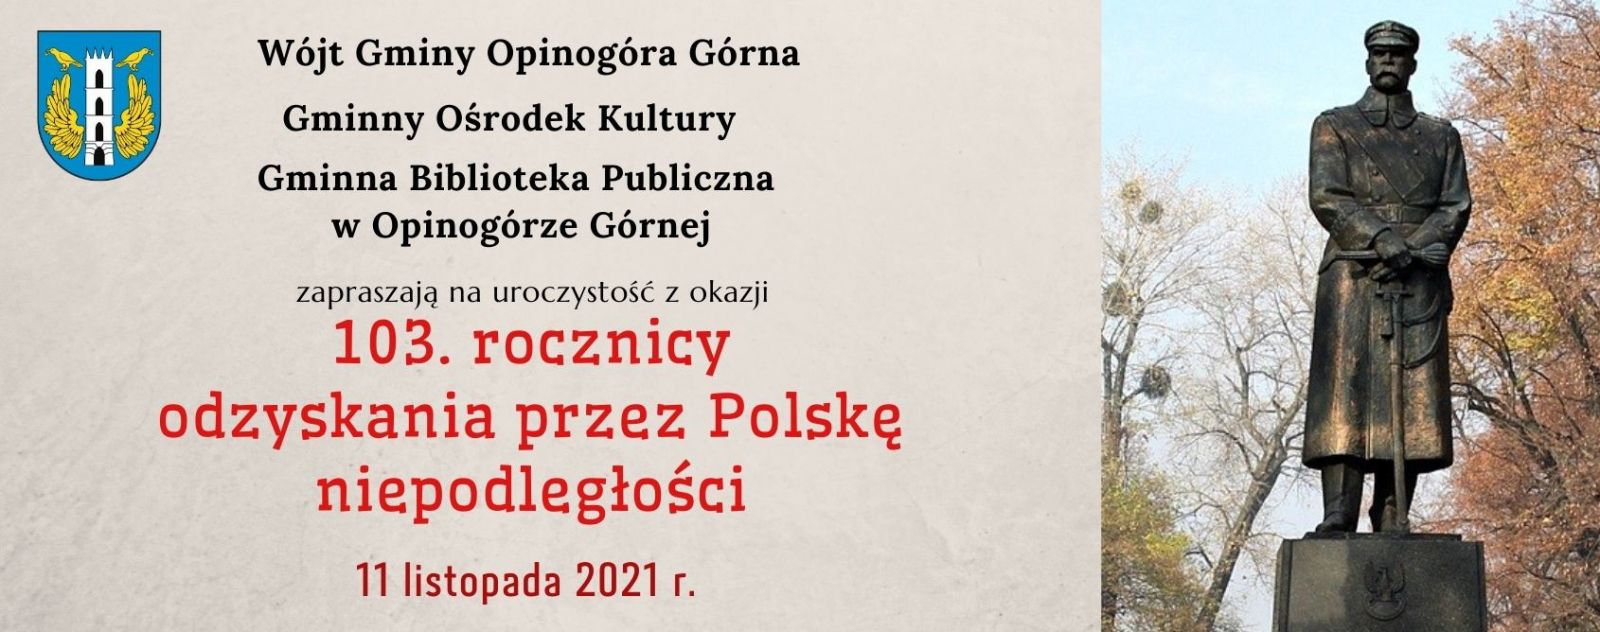 Zdjęcie plakatu informującego o obchodach 103. rocznicy odzyskania przez Polskę niepodległości